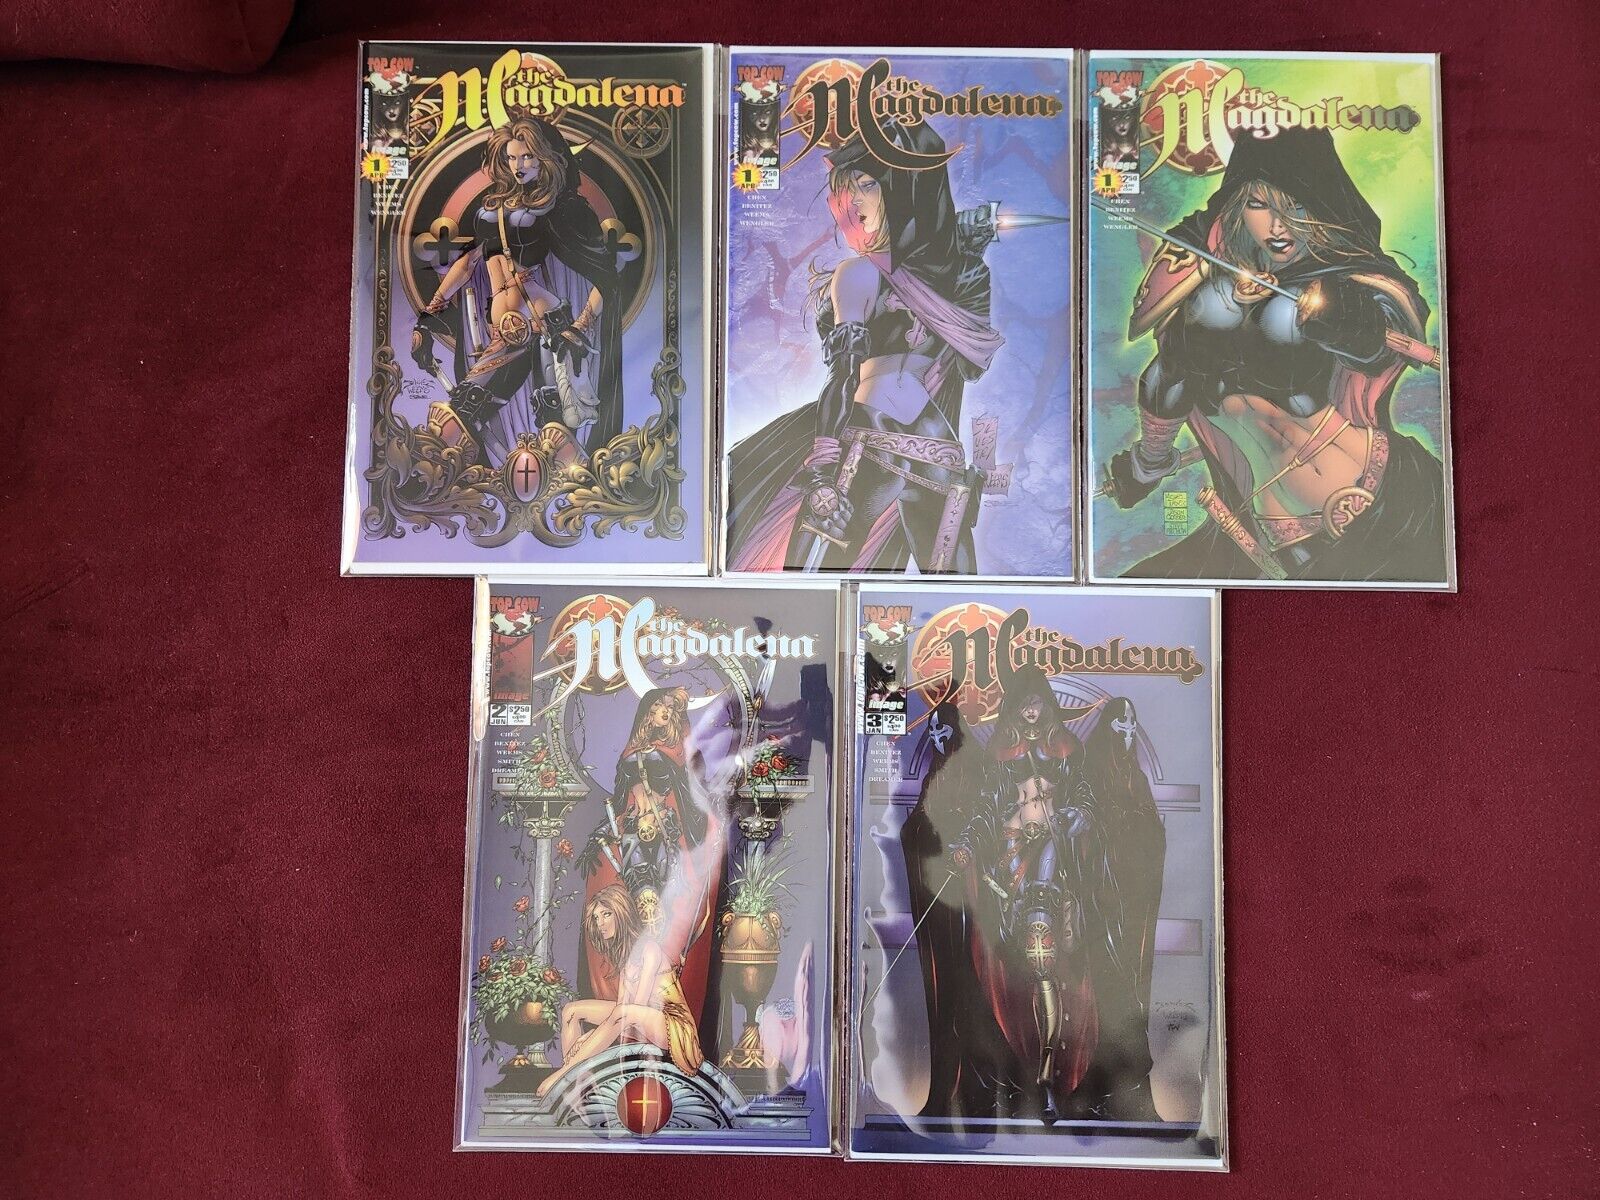 Magdalena Vol 1 #1-3 + Vol 2 #1-4 + Angelus 1/2 Complete Top Cow Image Comics